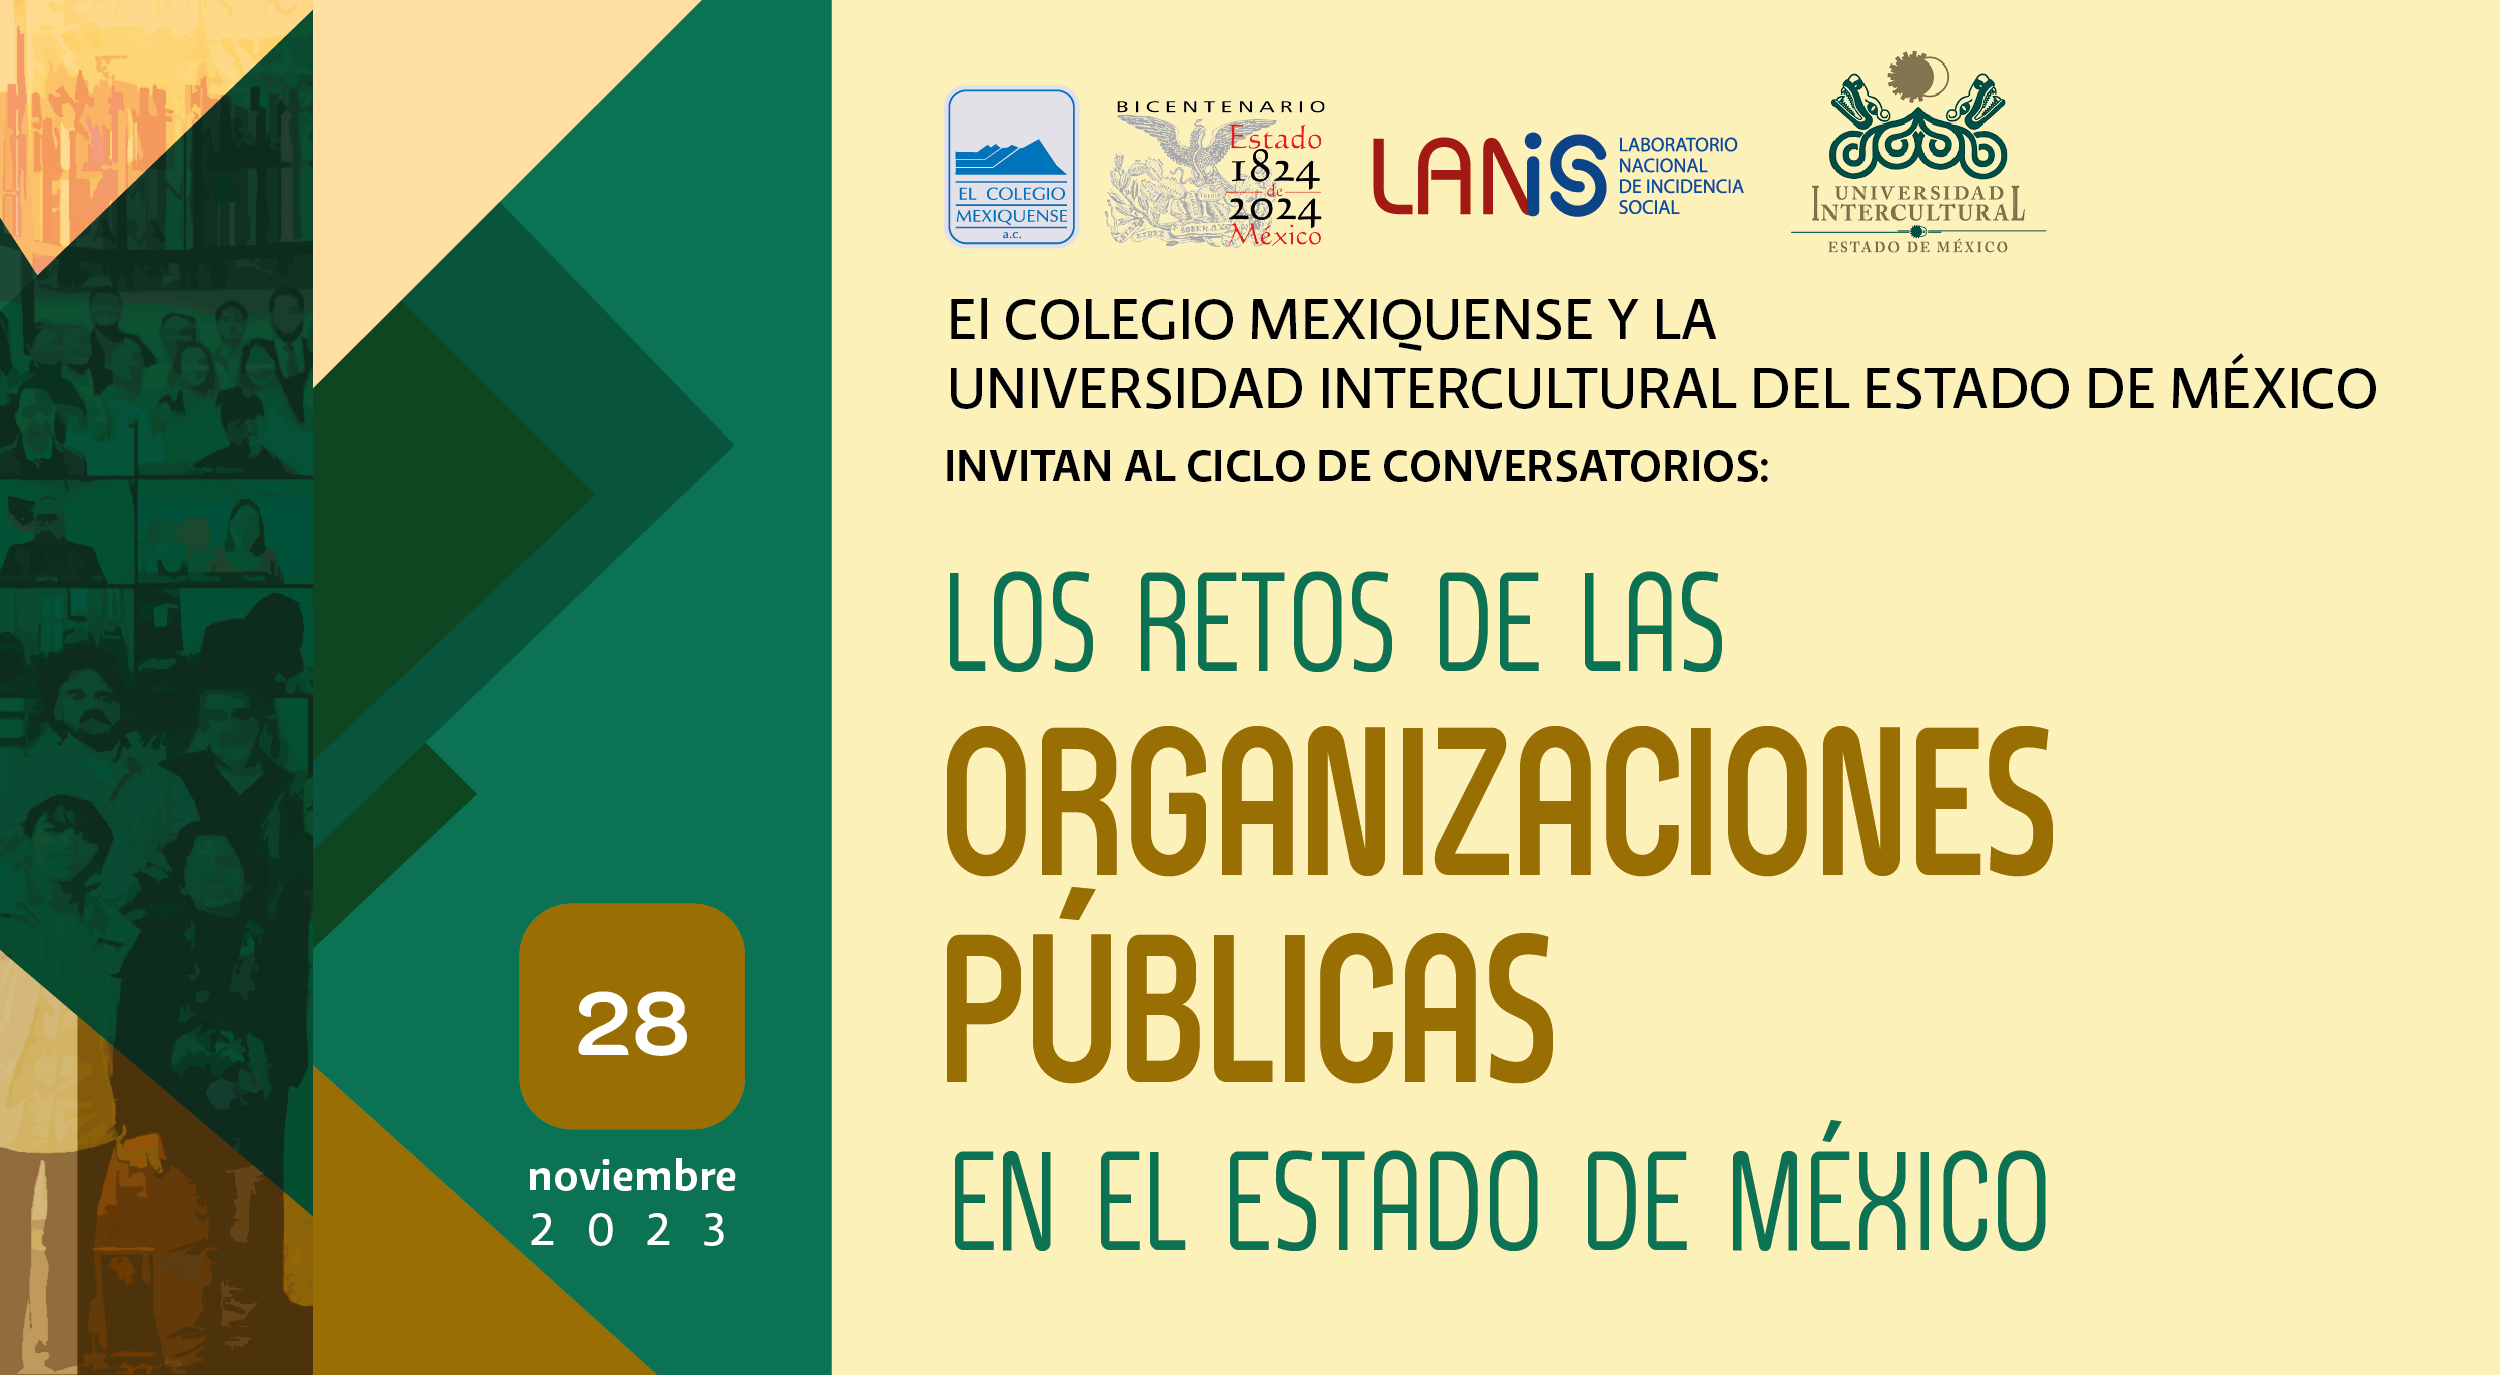 Ciclo de conversatorios. Los retos de las organizaciones públicas en el Estado de México